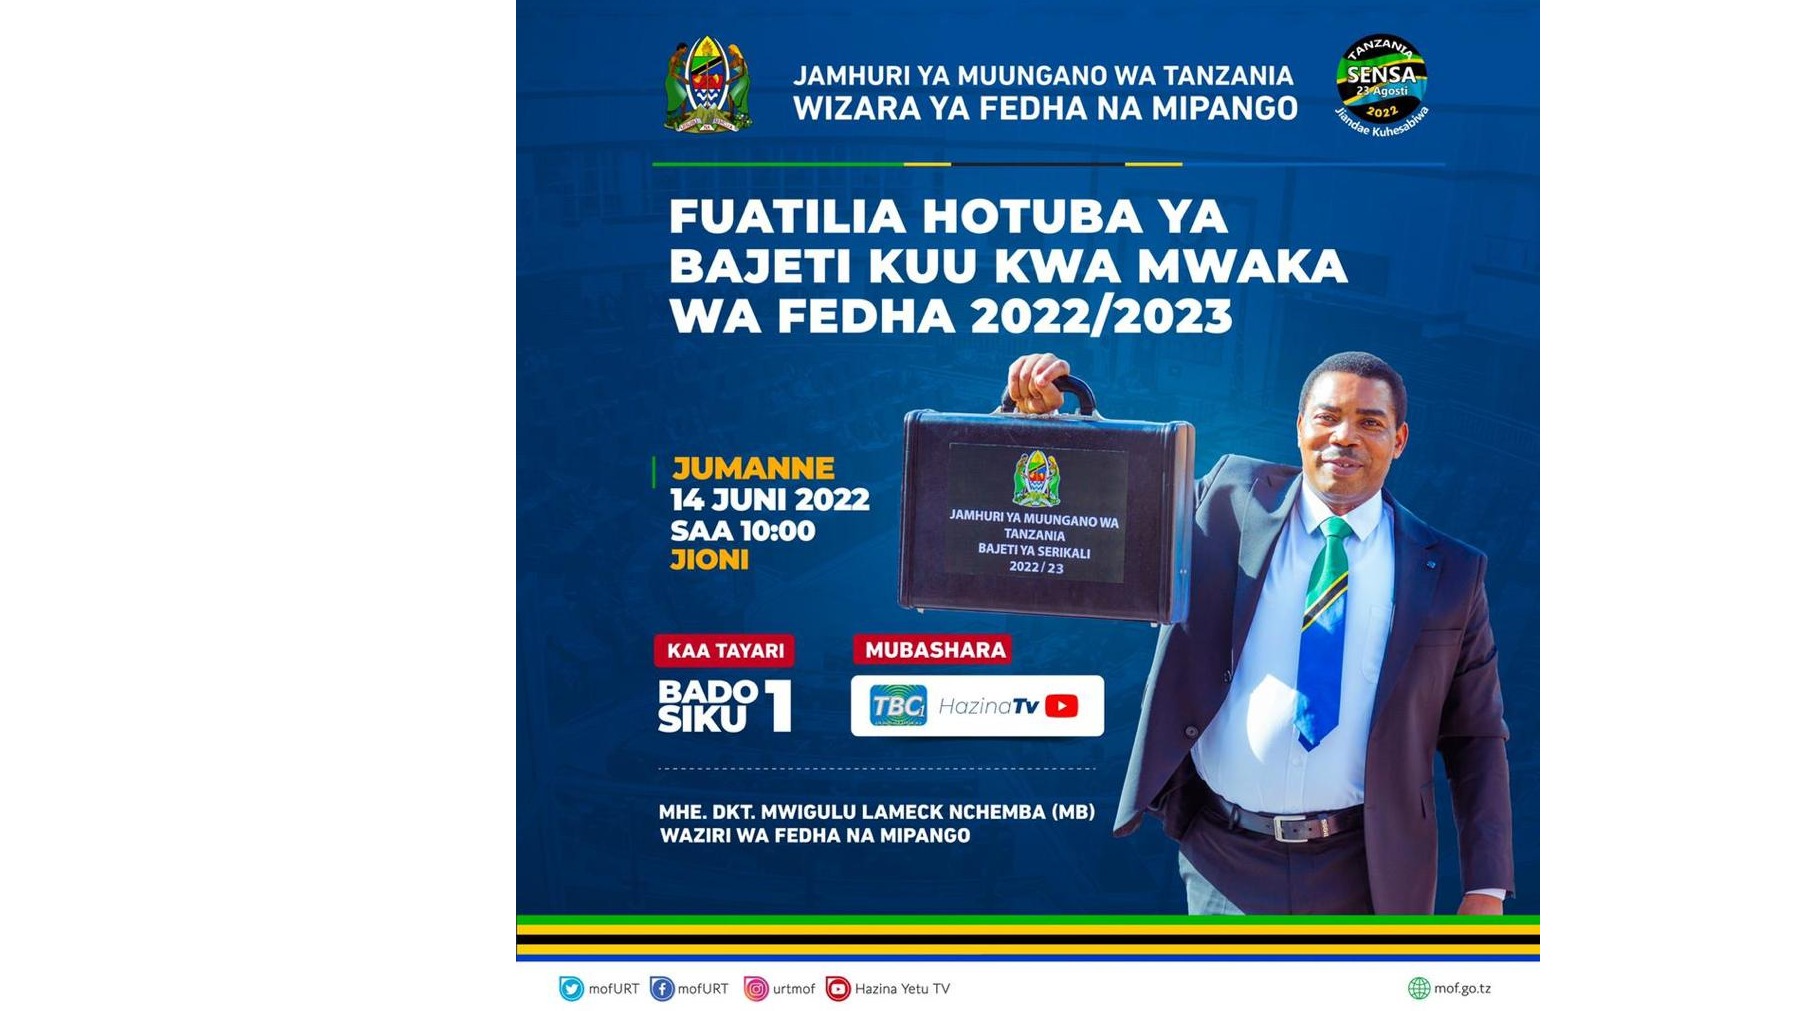 Bajeti Kuu kwa Mwaka wa Fedha 2022/2023